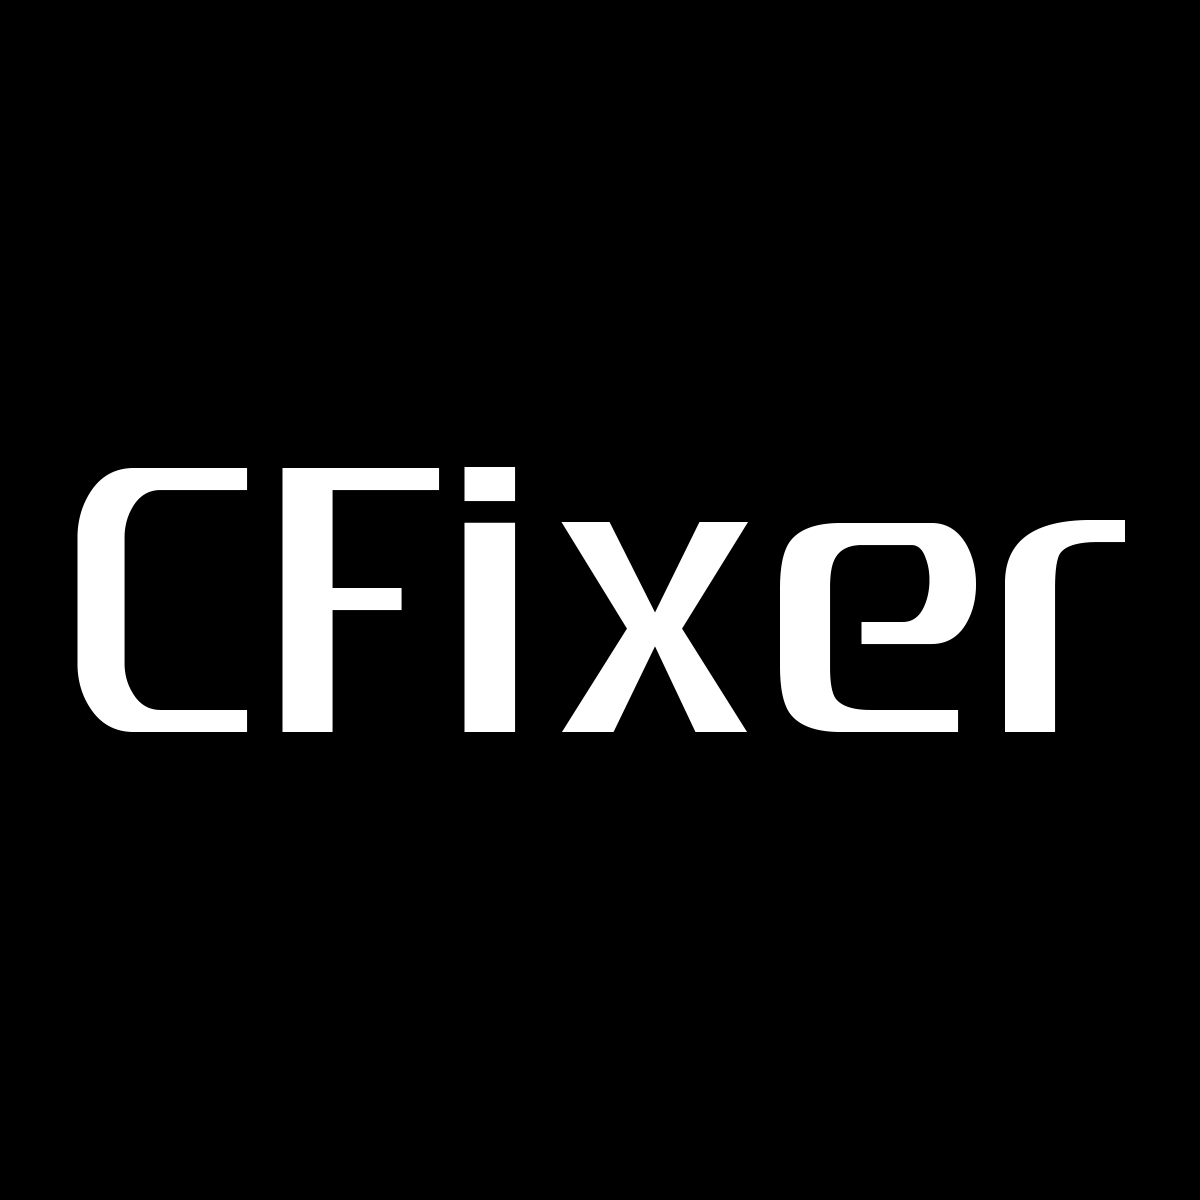 CFixer